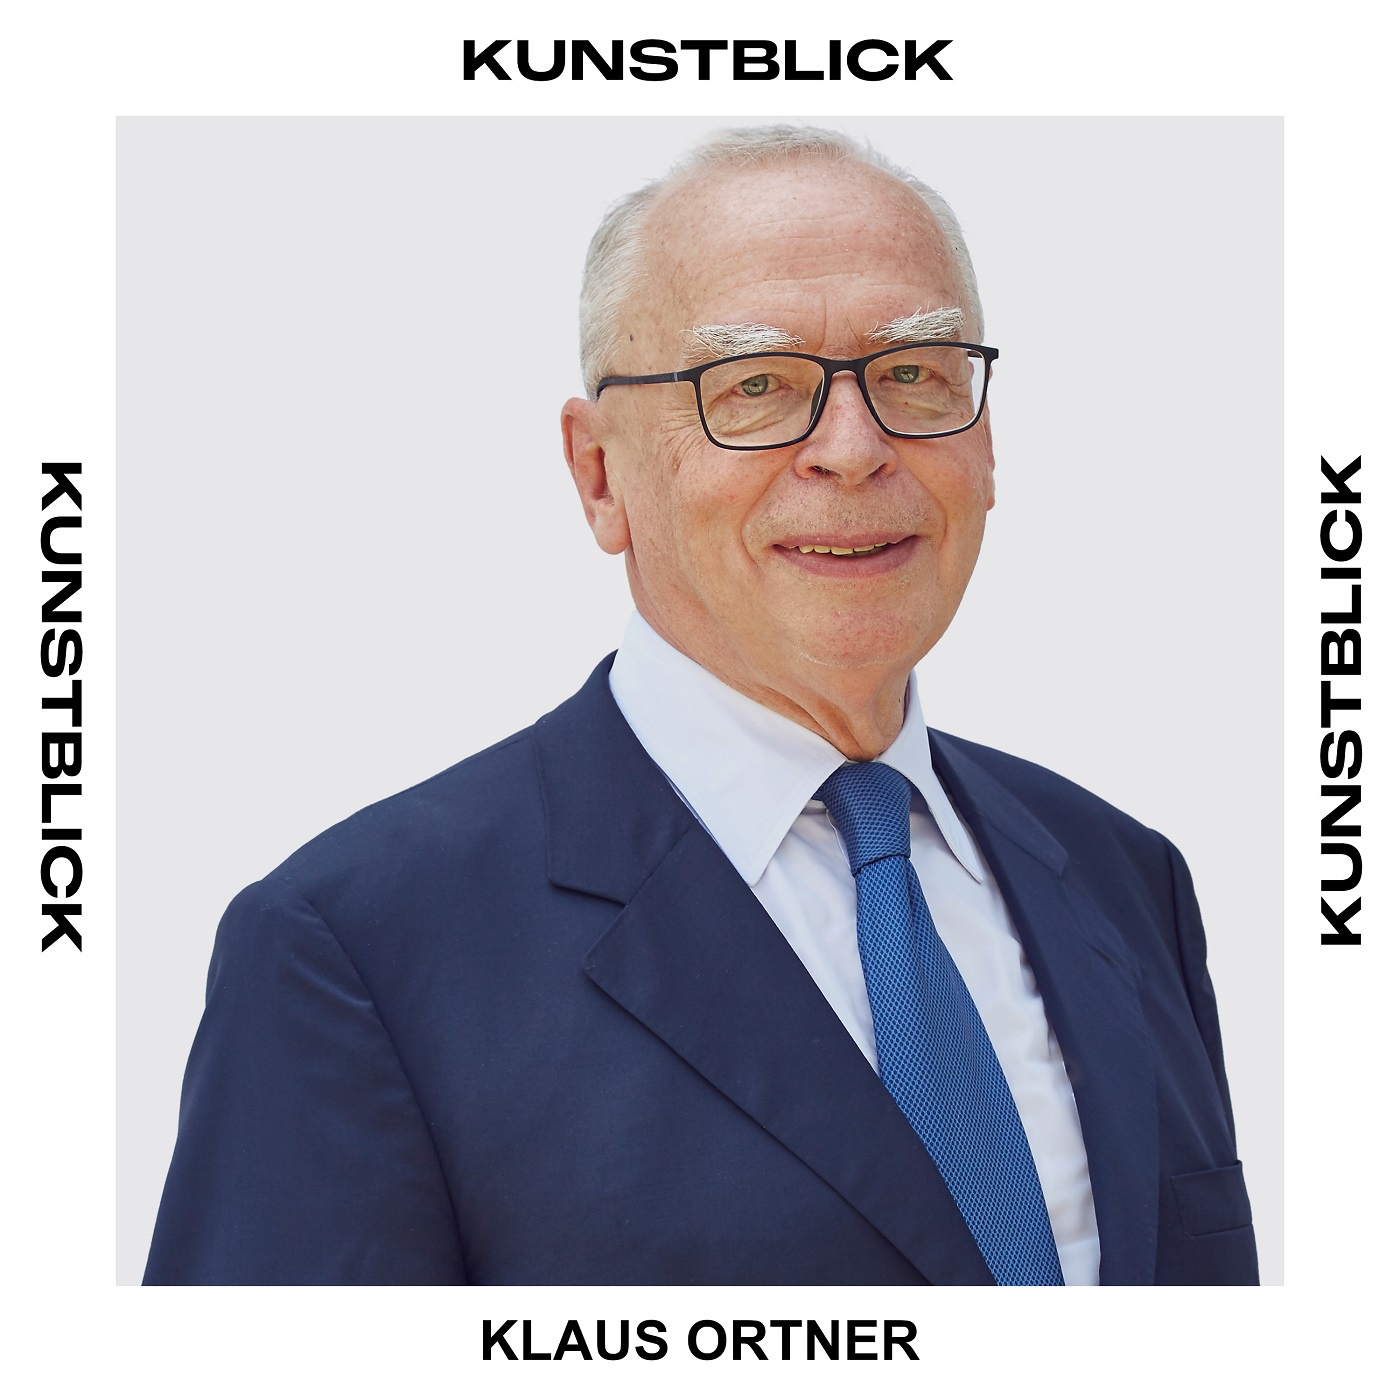 DI Klaus Ortner - Unternehmer und Kunstsammler